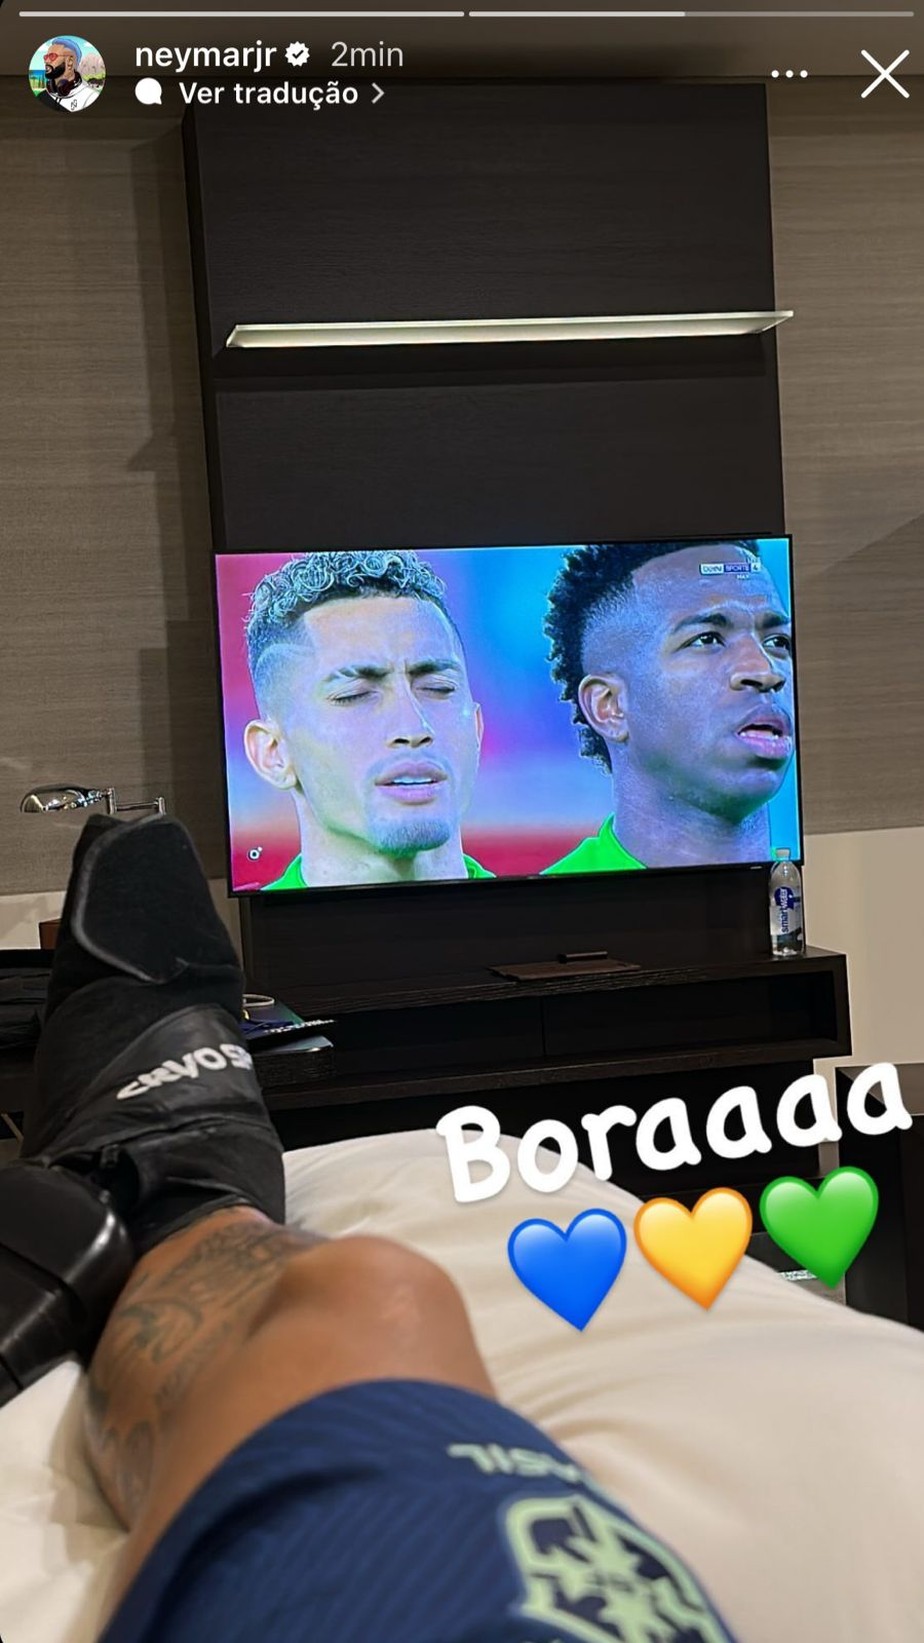 Neymar assiste jogo do Brasil do quarto do hotel